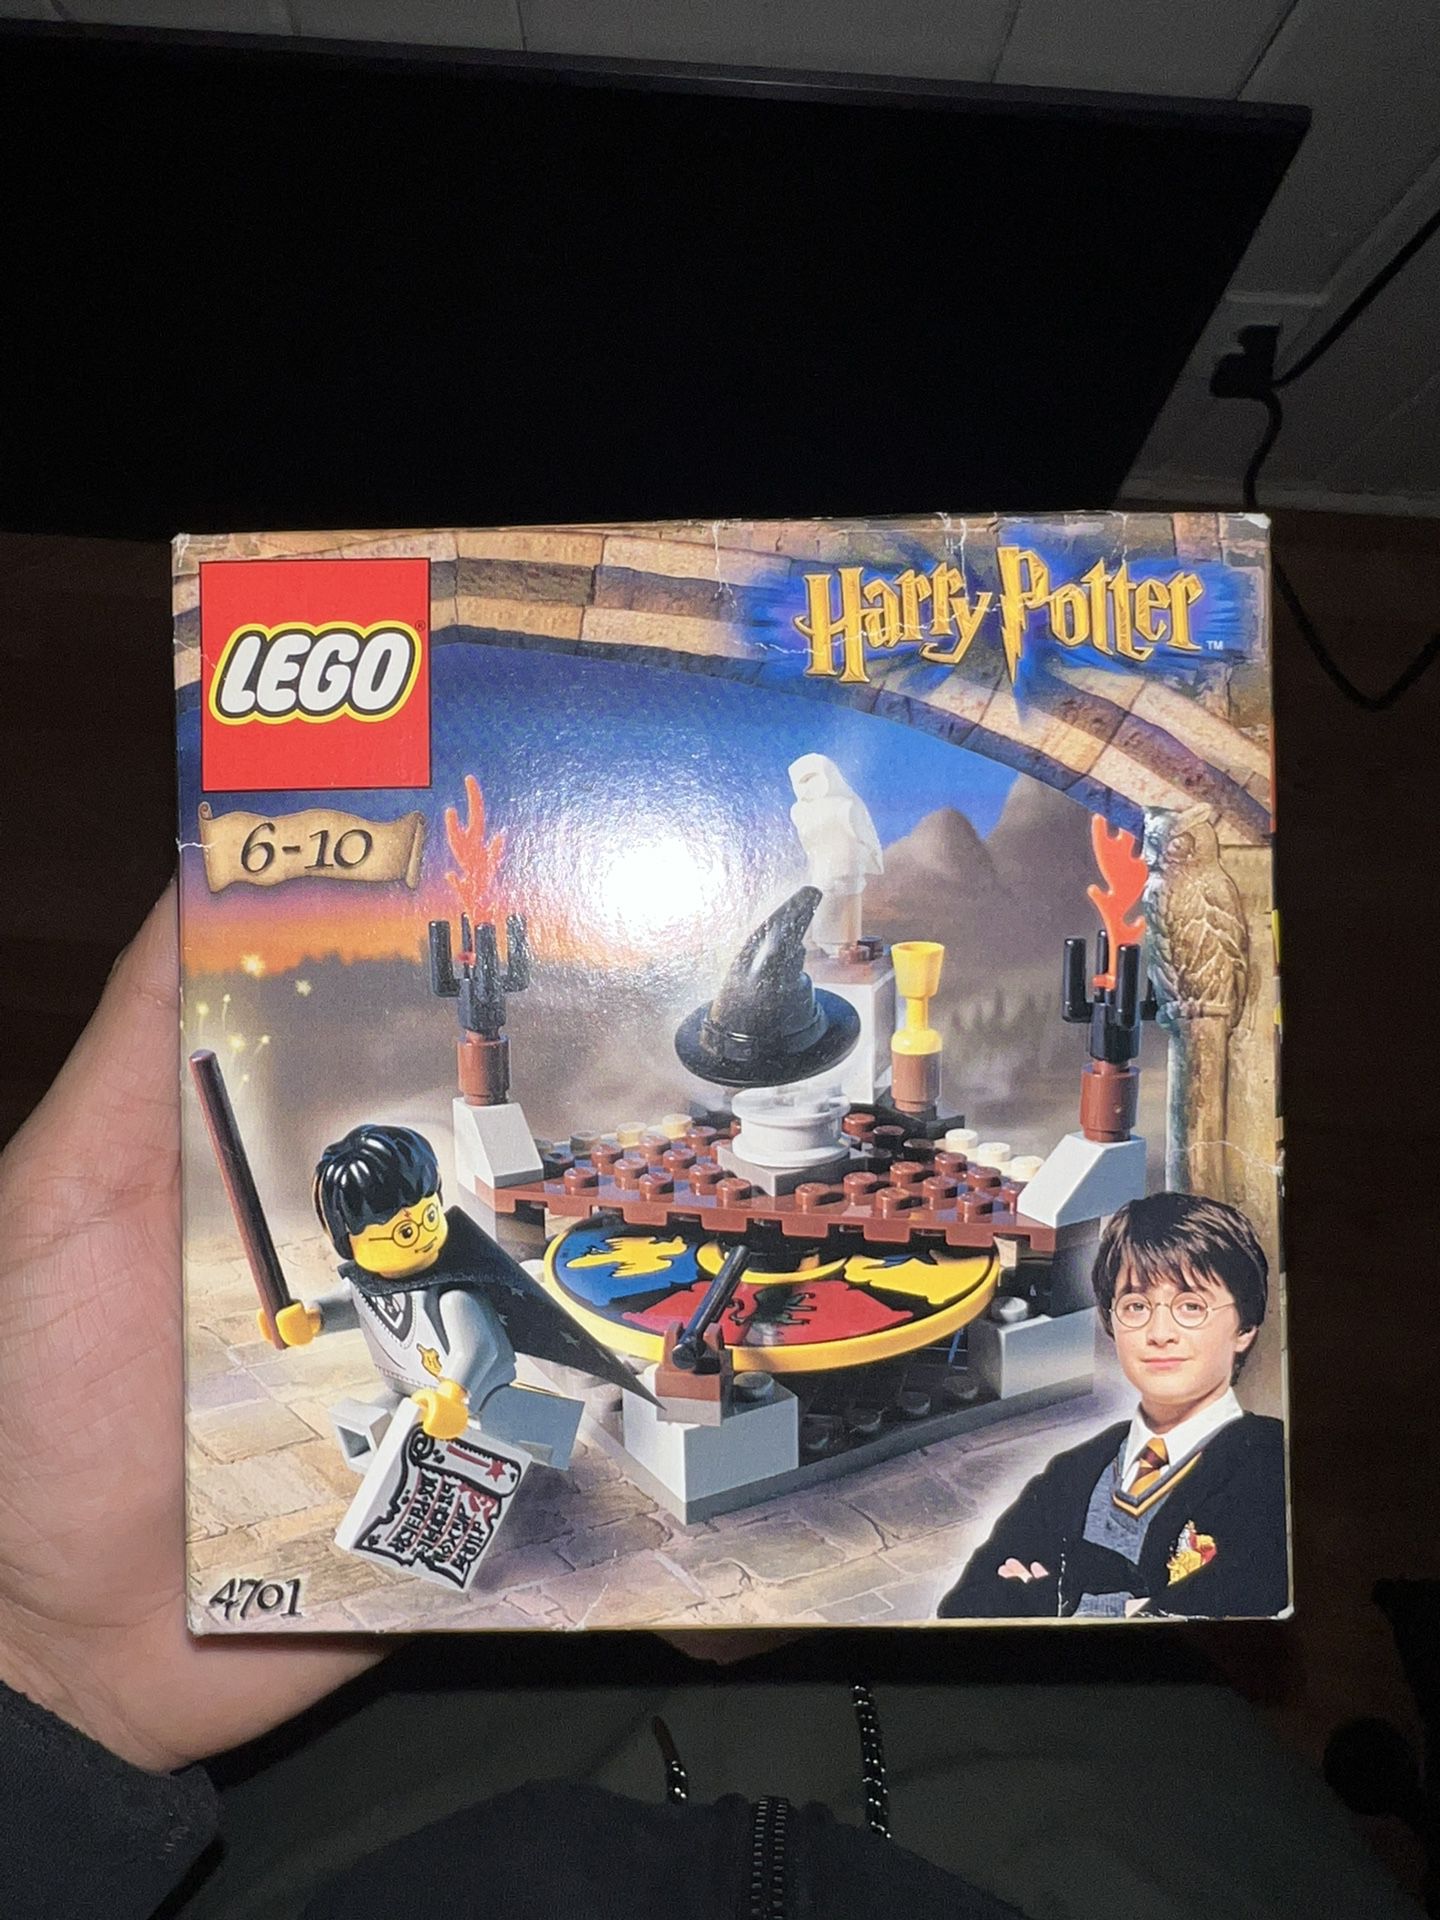 Unopened Lego Harry Potter Set #4701